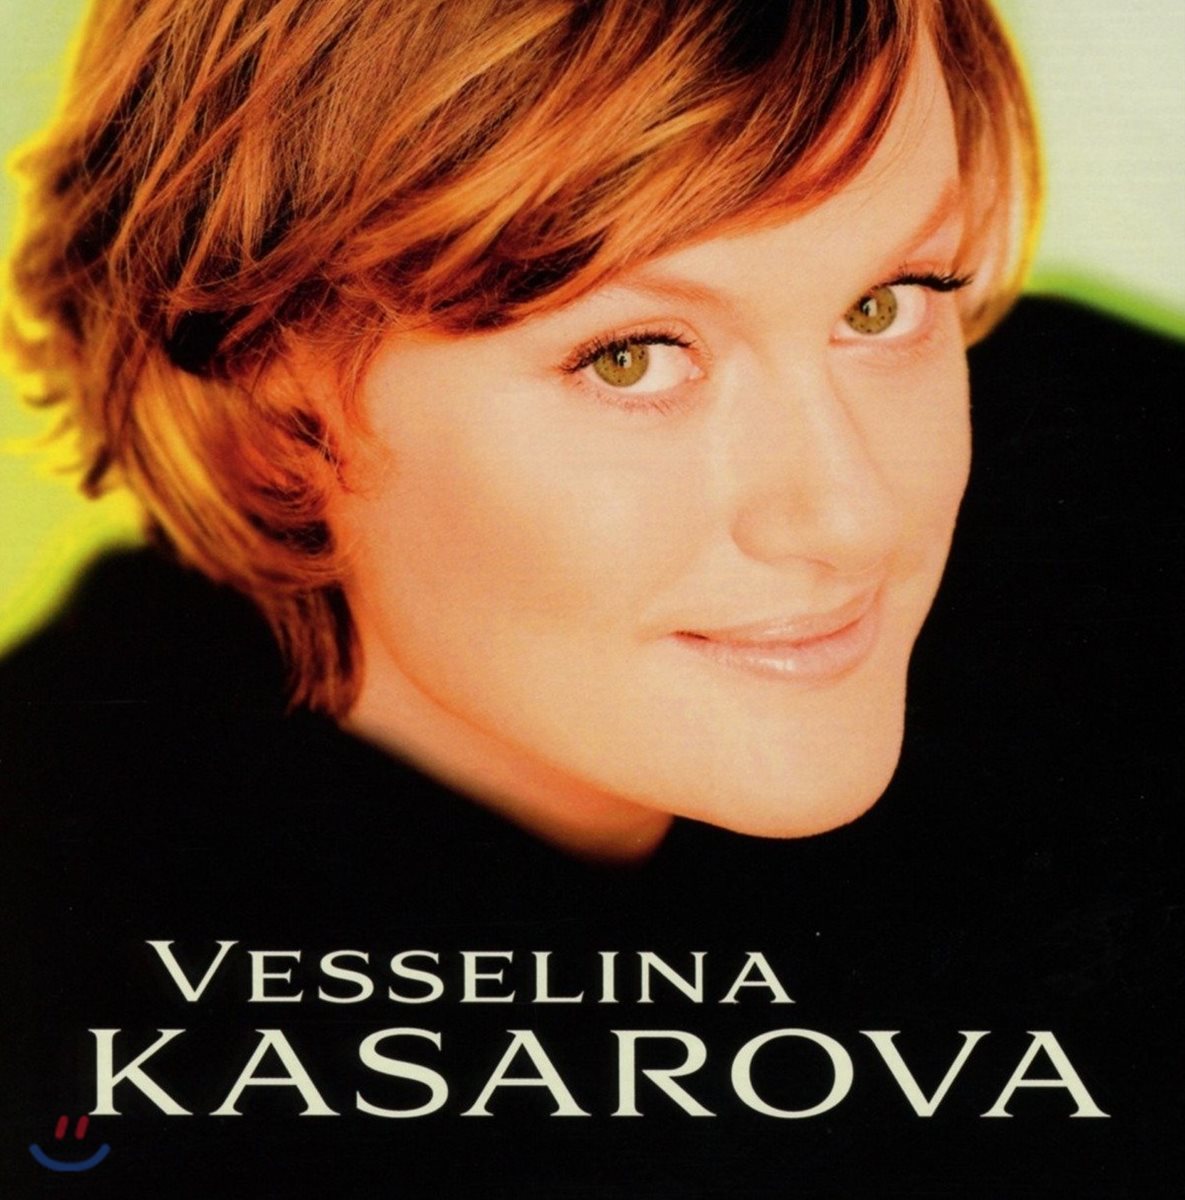 베셀리나 카사로바 에디션 (Vesselina Kasarova Edition)